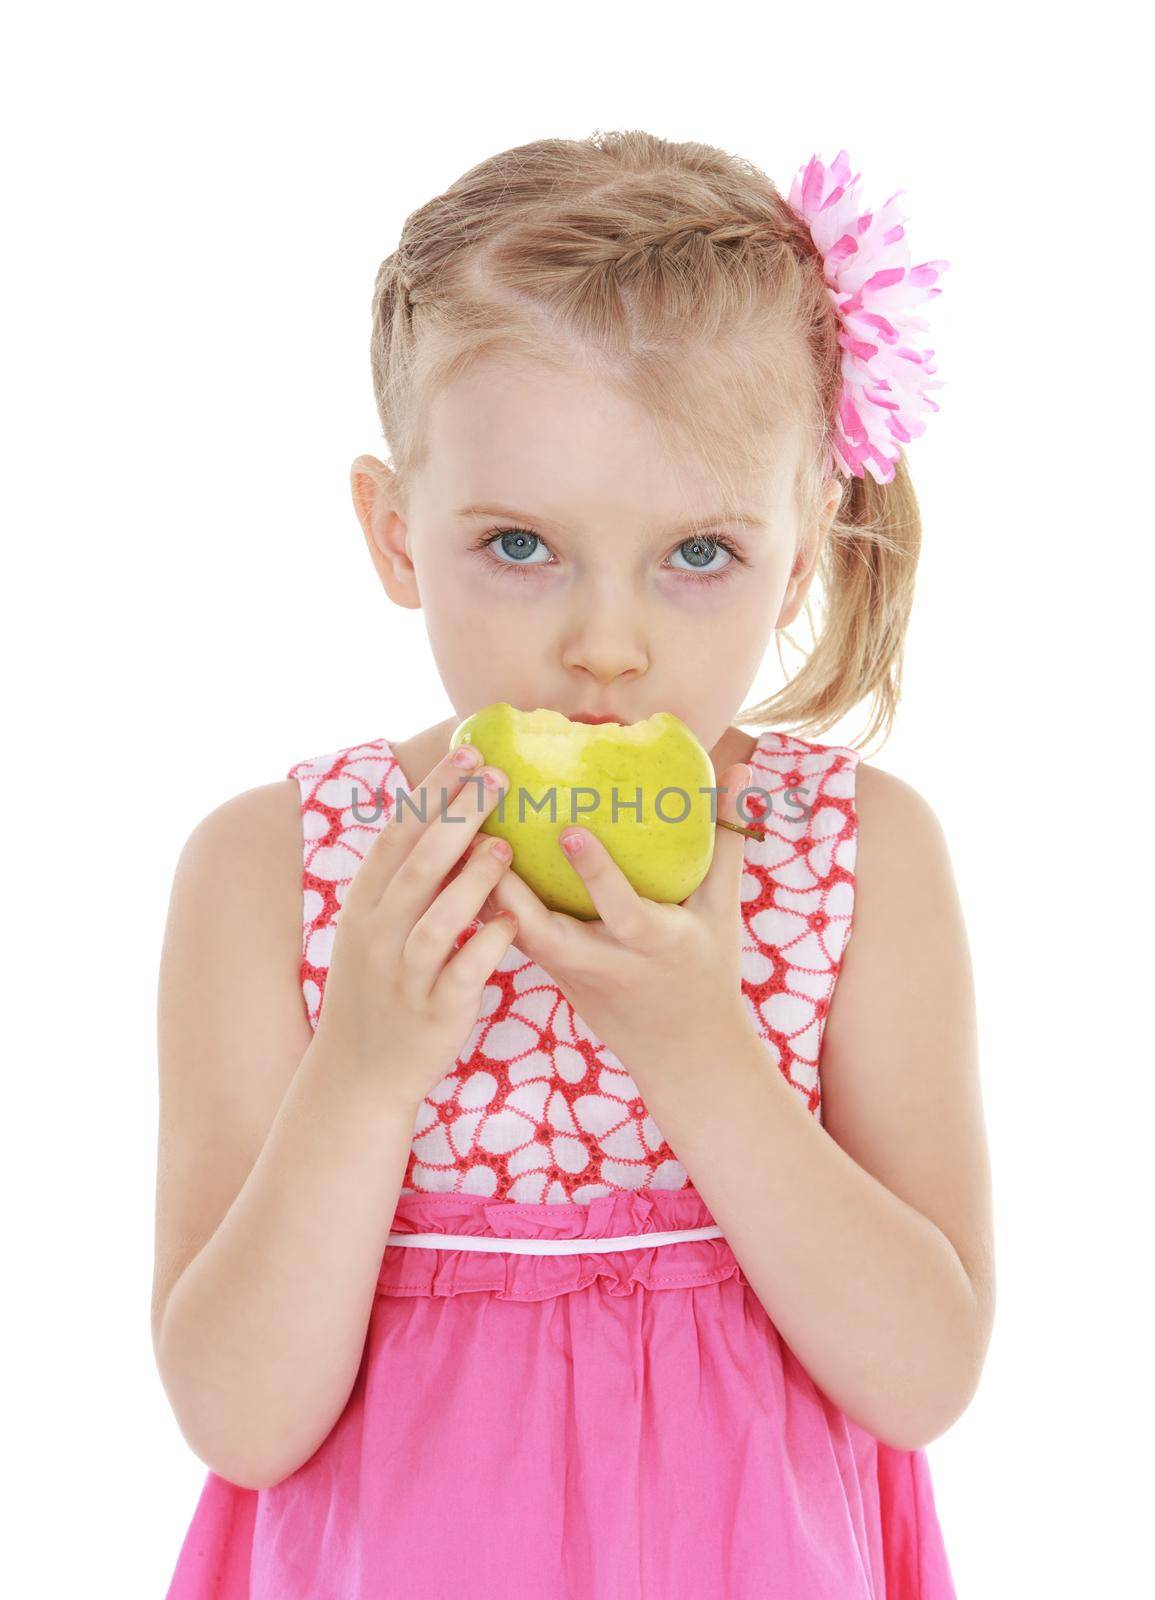 Little girl bites green apple. Isolated on white background .